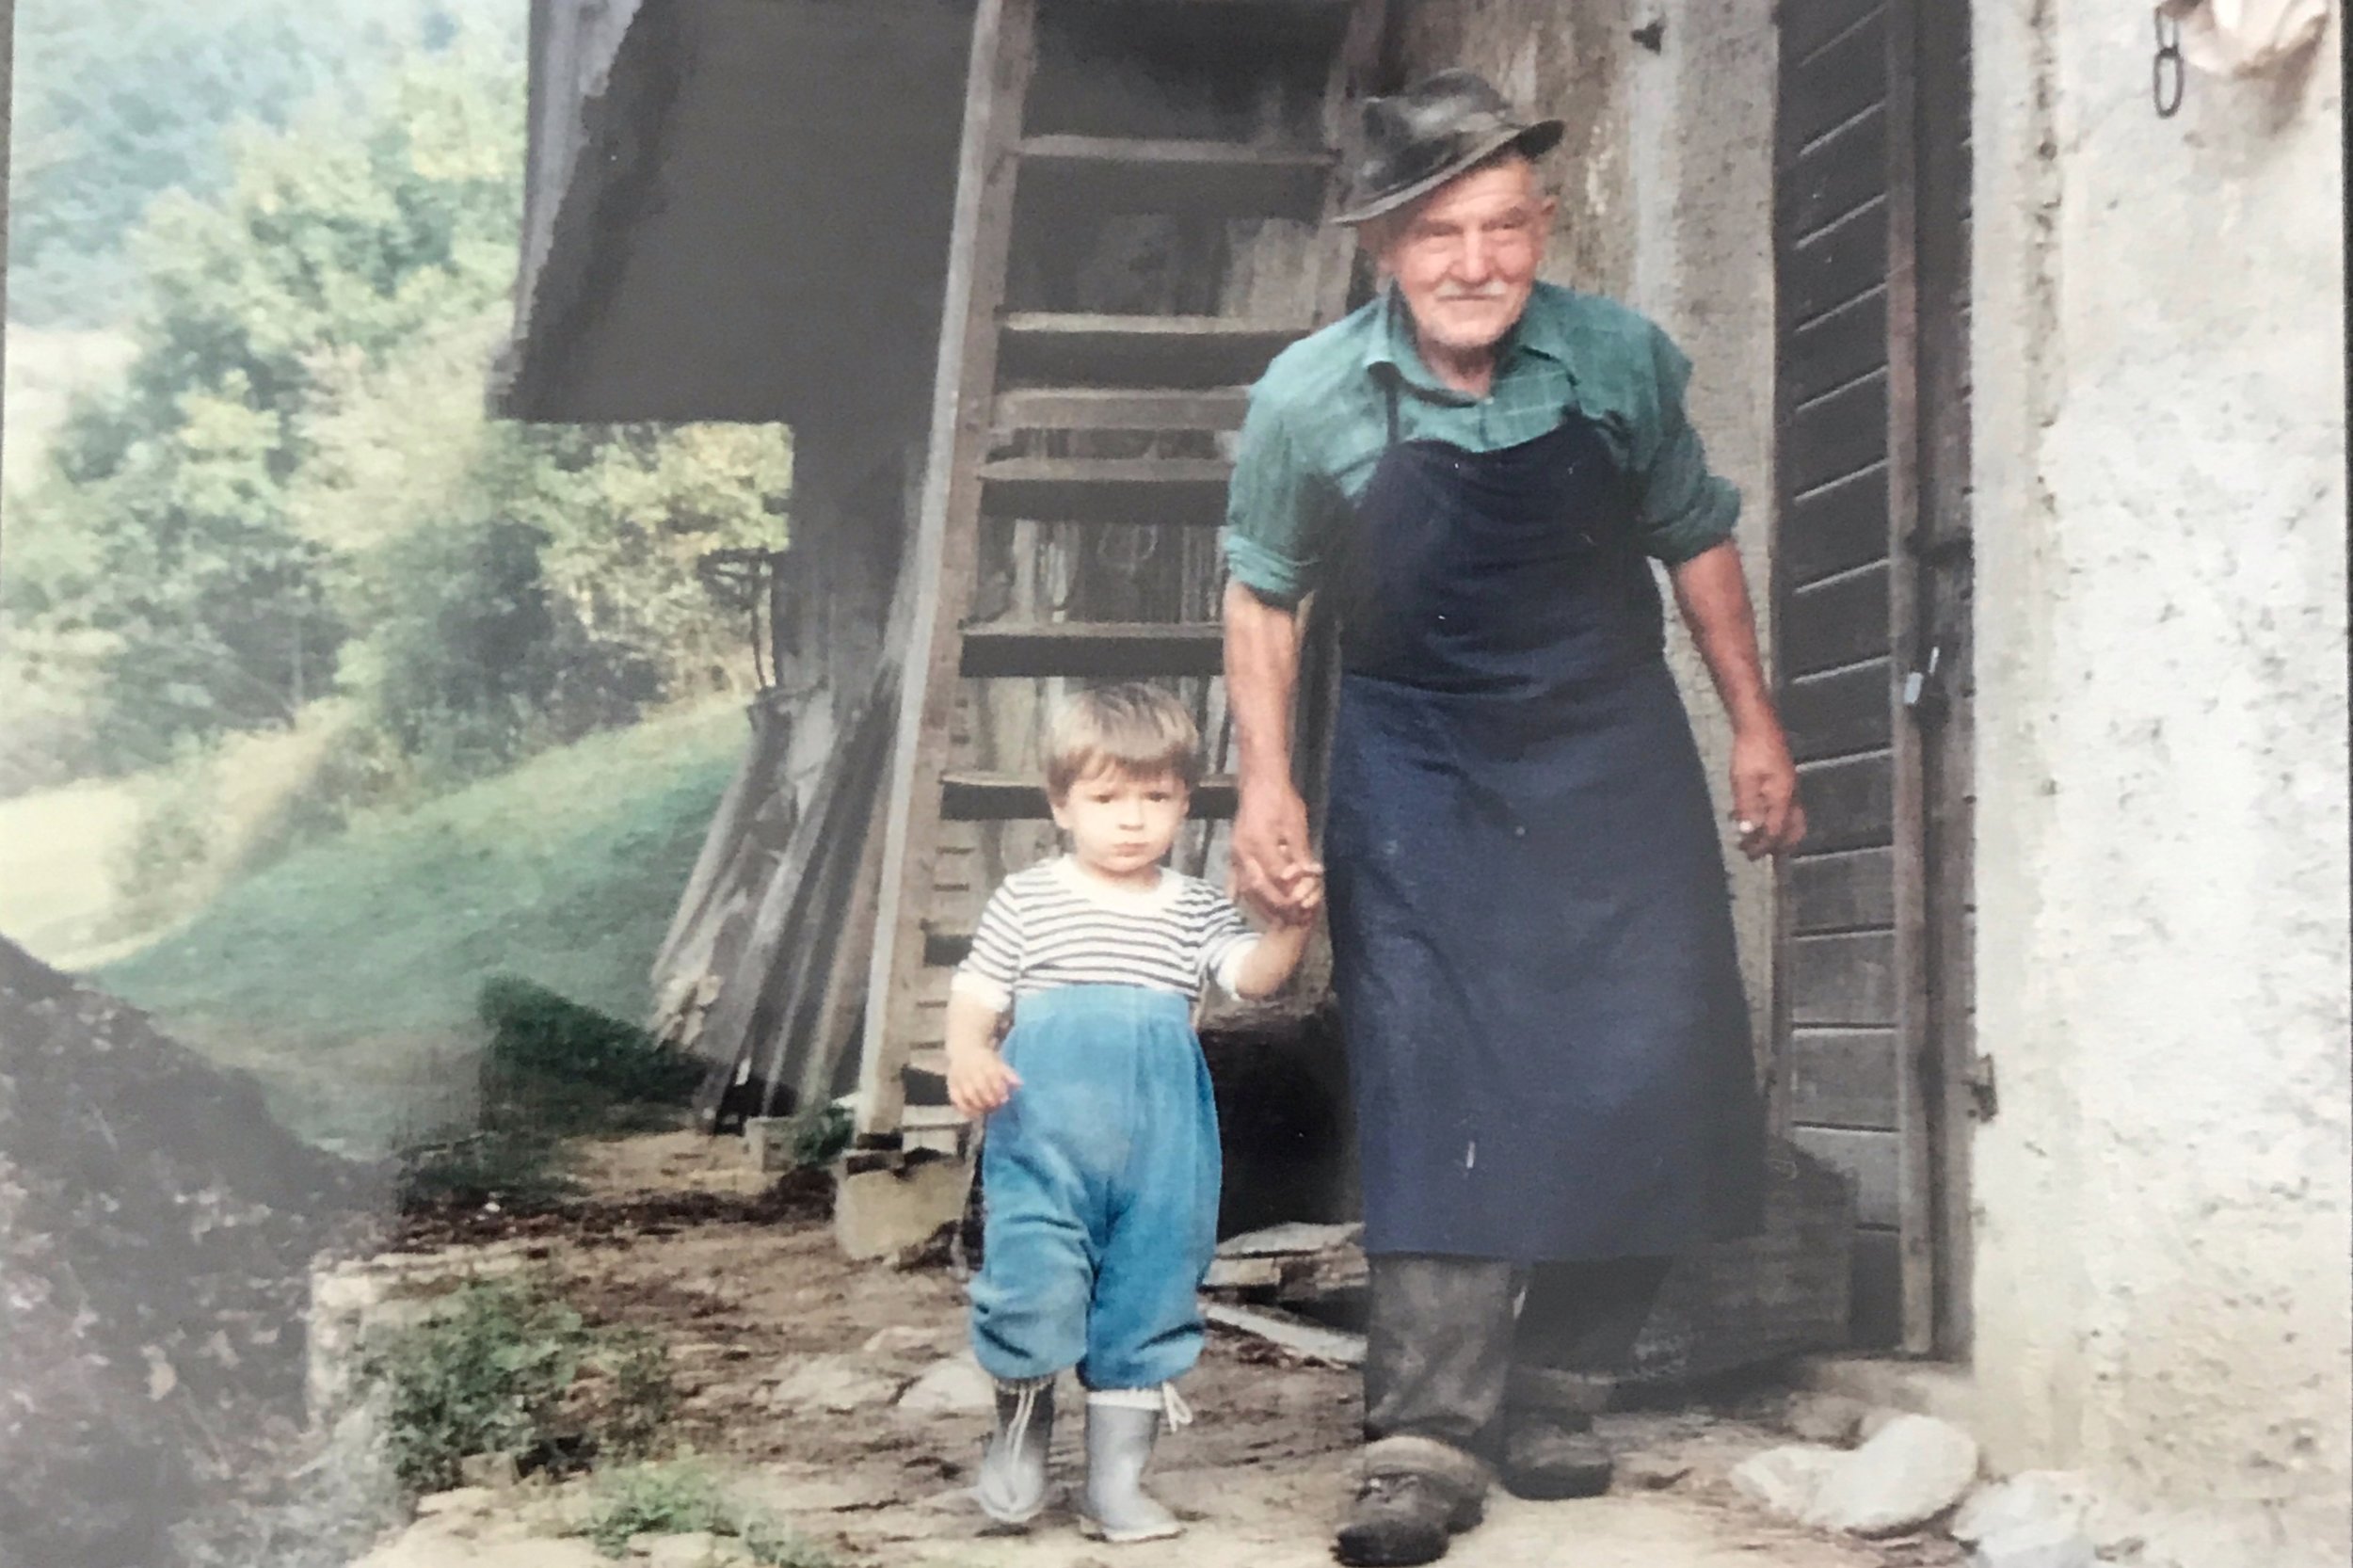 A New Favorite Picture - Stariata (Grandpa) Gorenć with K’s cousin Alex